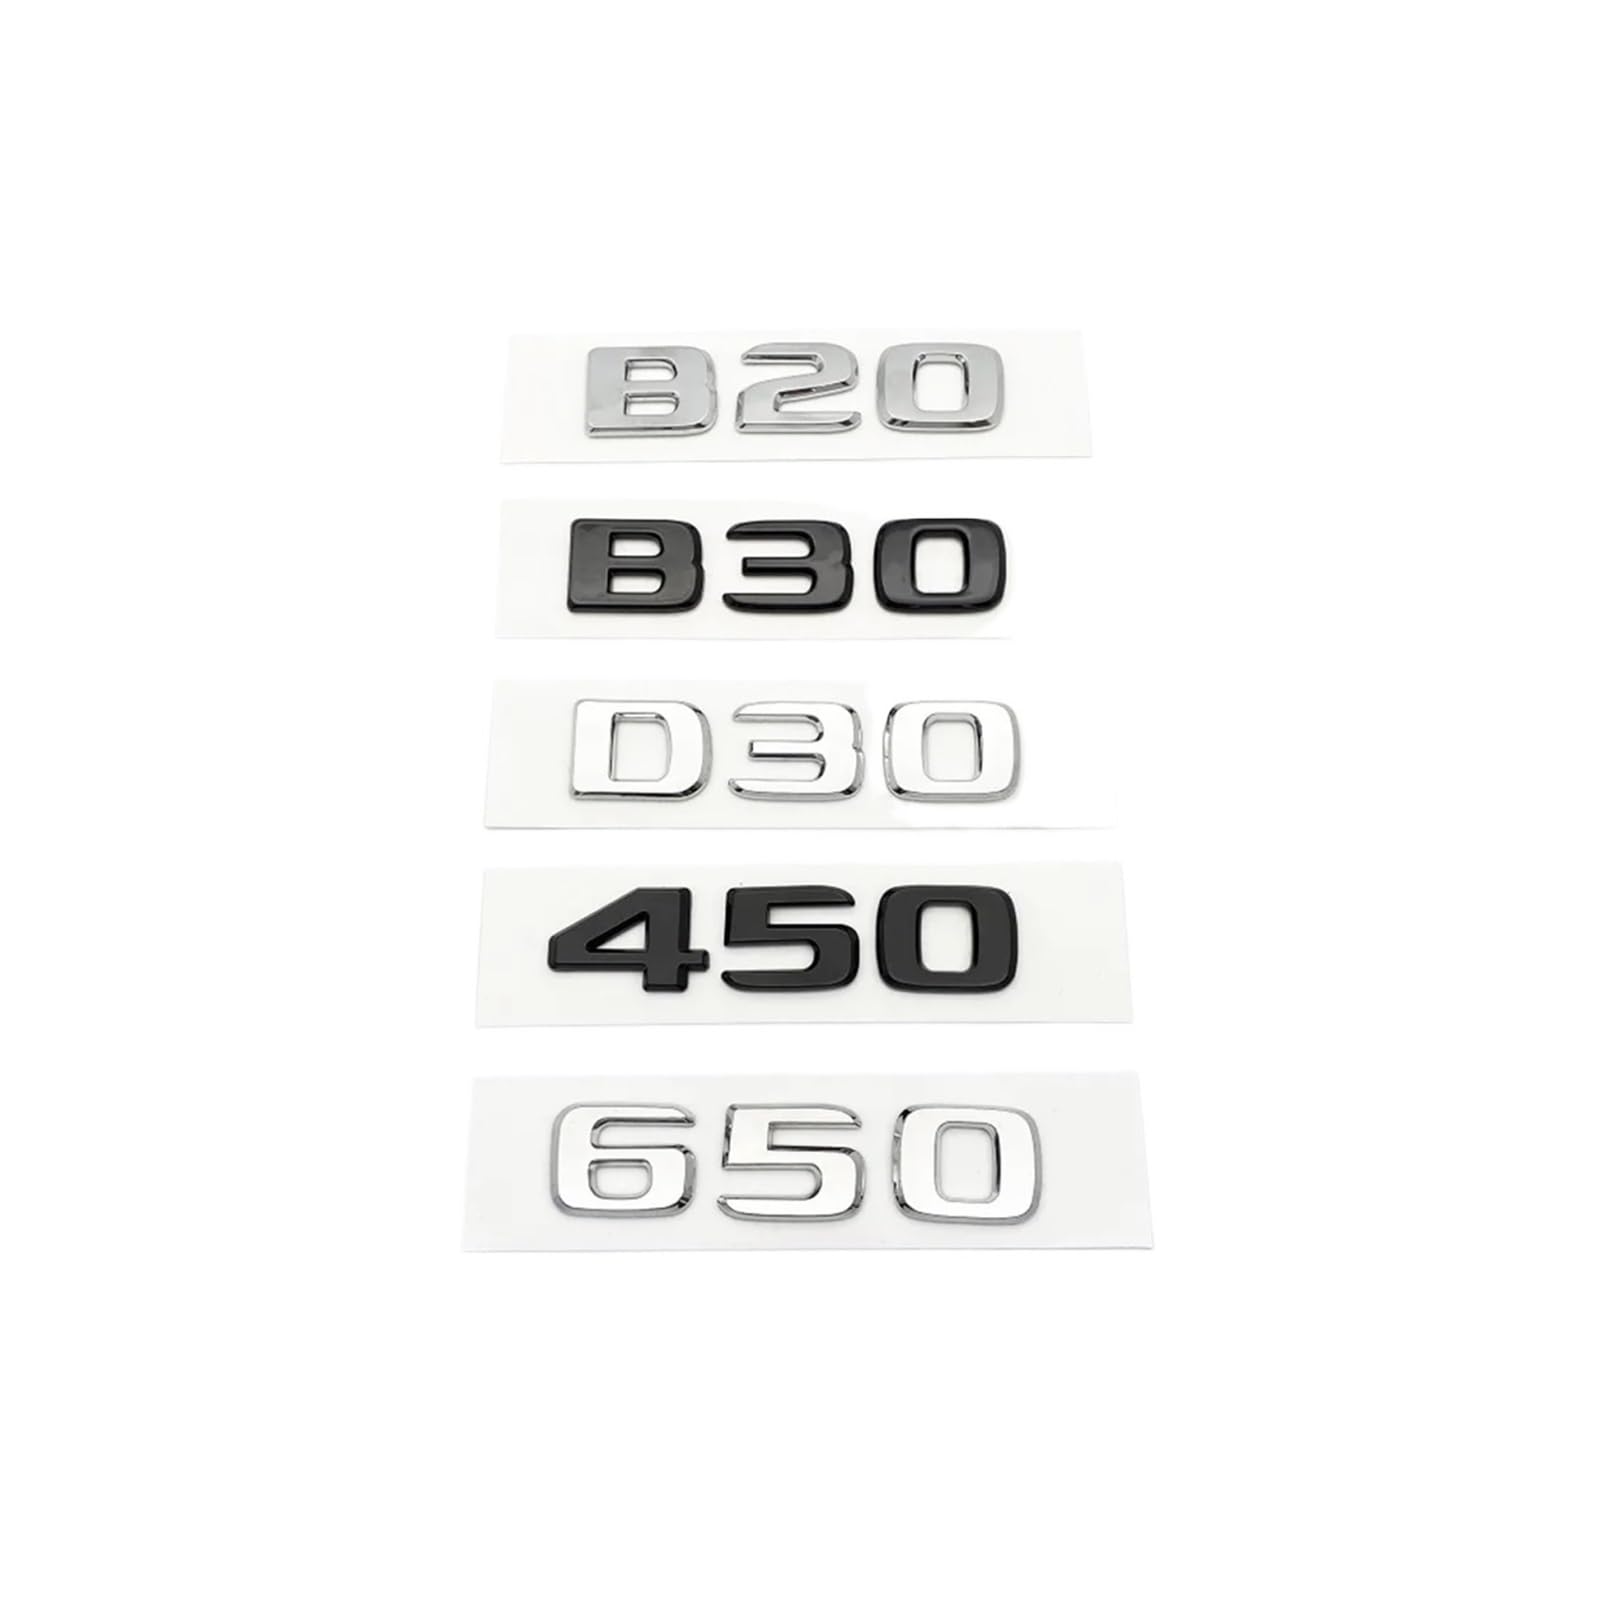 YSRWTBBA Silberne Schwarze Buchstaben B20 B30 D30 450 650 ABS-Emblem, kompatibel mit C W203 W204 W205 Coupé, Kofferraum-Abzeichen, Logo-Aufkleber, einfach abziehen und abzi(Glo von YSRWTBBA